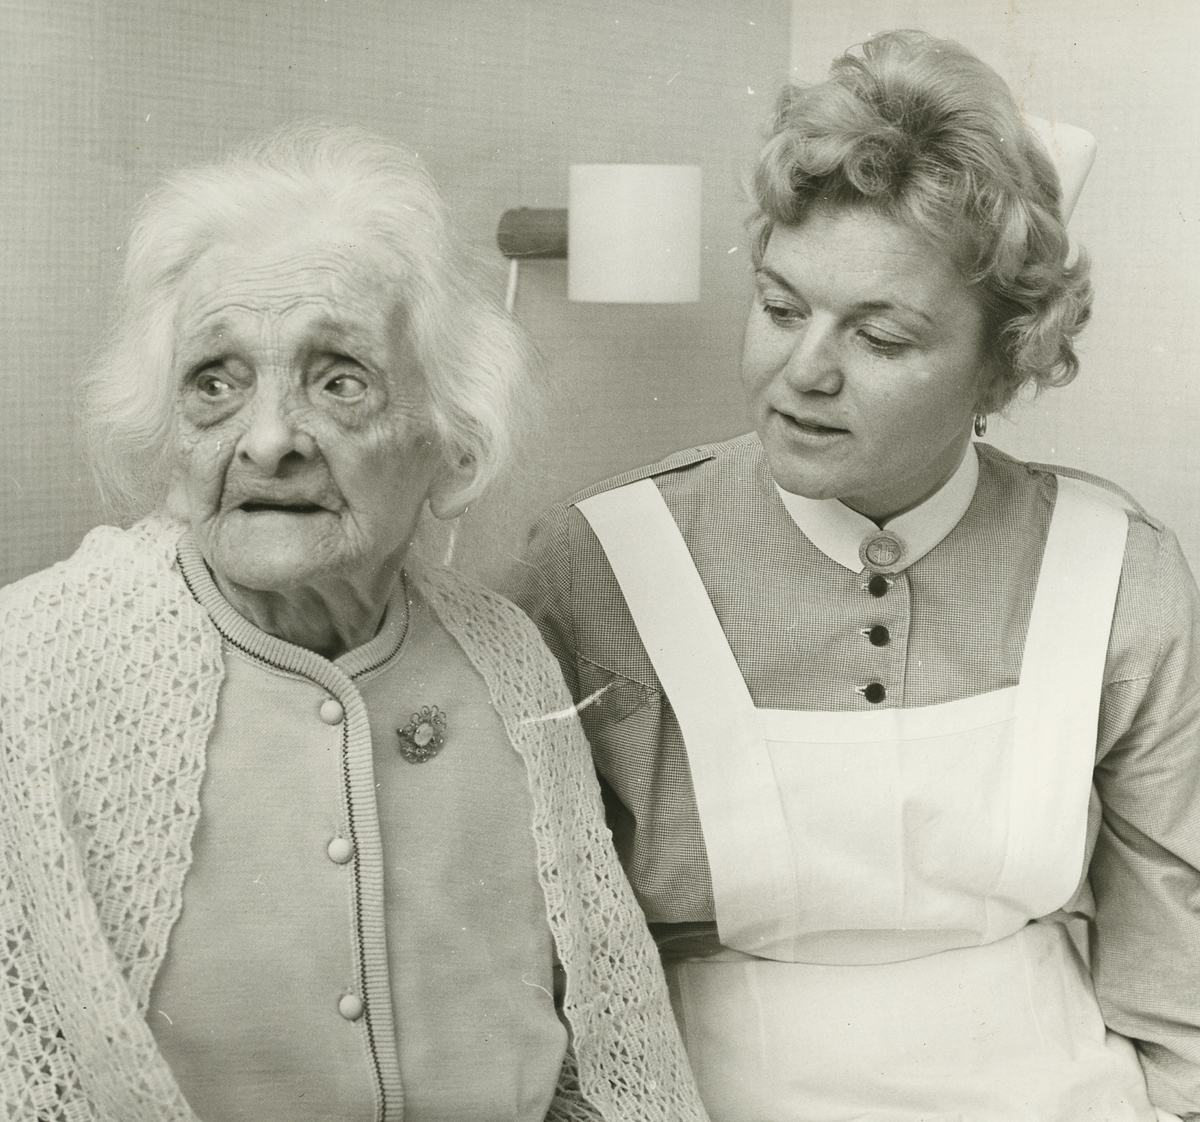 Gustavsgården. Anna Stein tillsammans med sköterska på sin hundraårsdag den 14 januari 1967.
Personer: Anna Stein och Syster Birgit Birgit Lundqvist